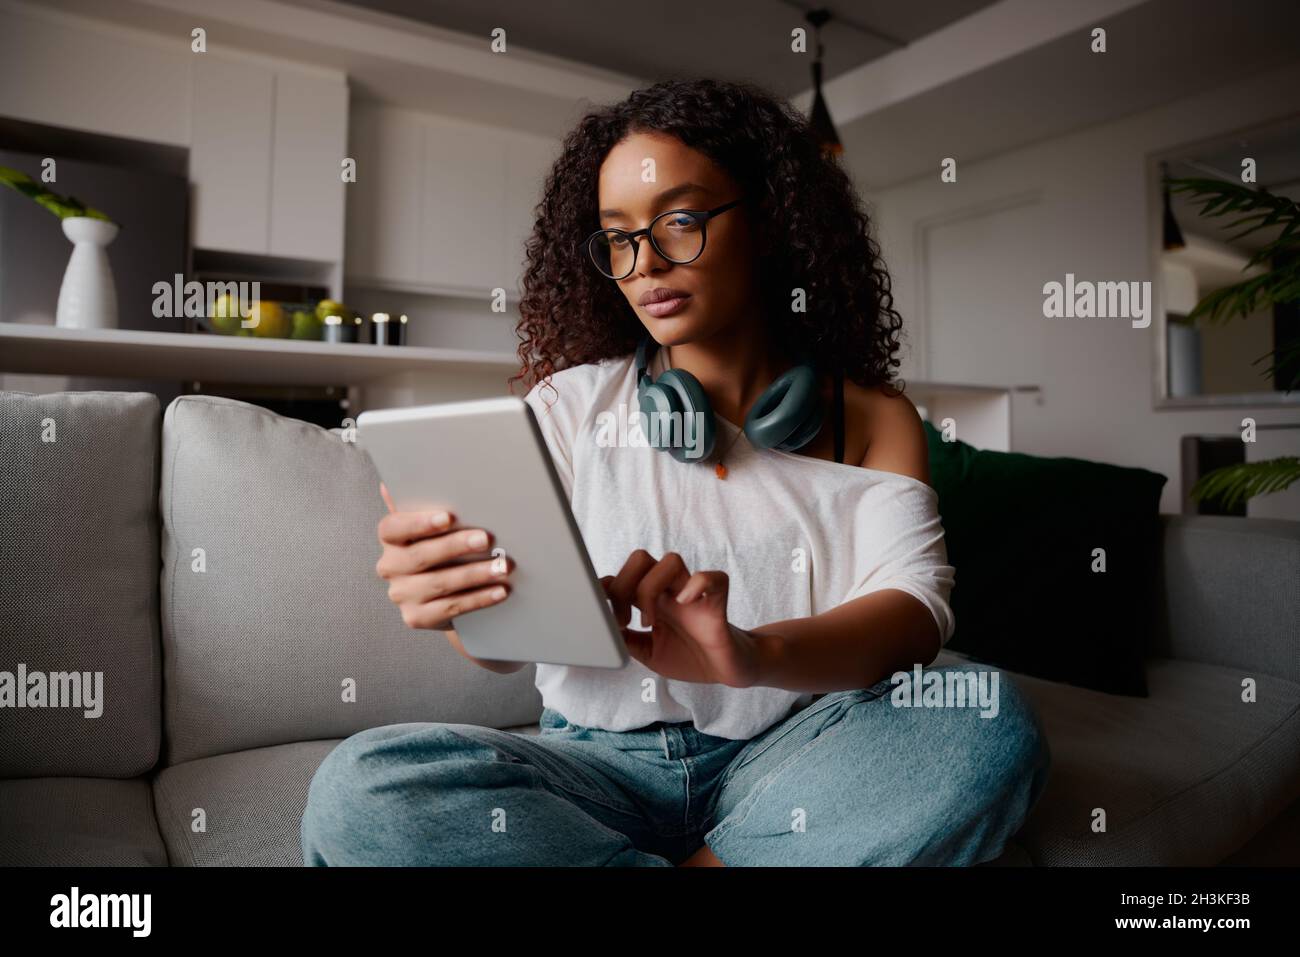 Femme multi-ethnique avec des lunettes utilisant une tablette tout en étant assis sur le canapé, contenu Banque D'Images